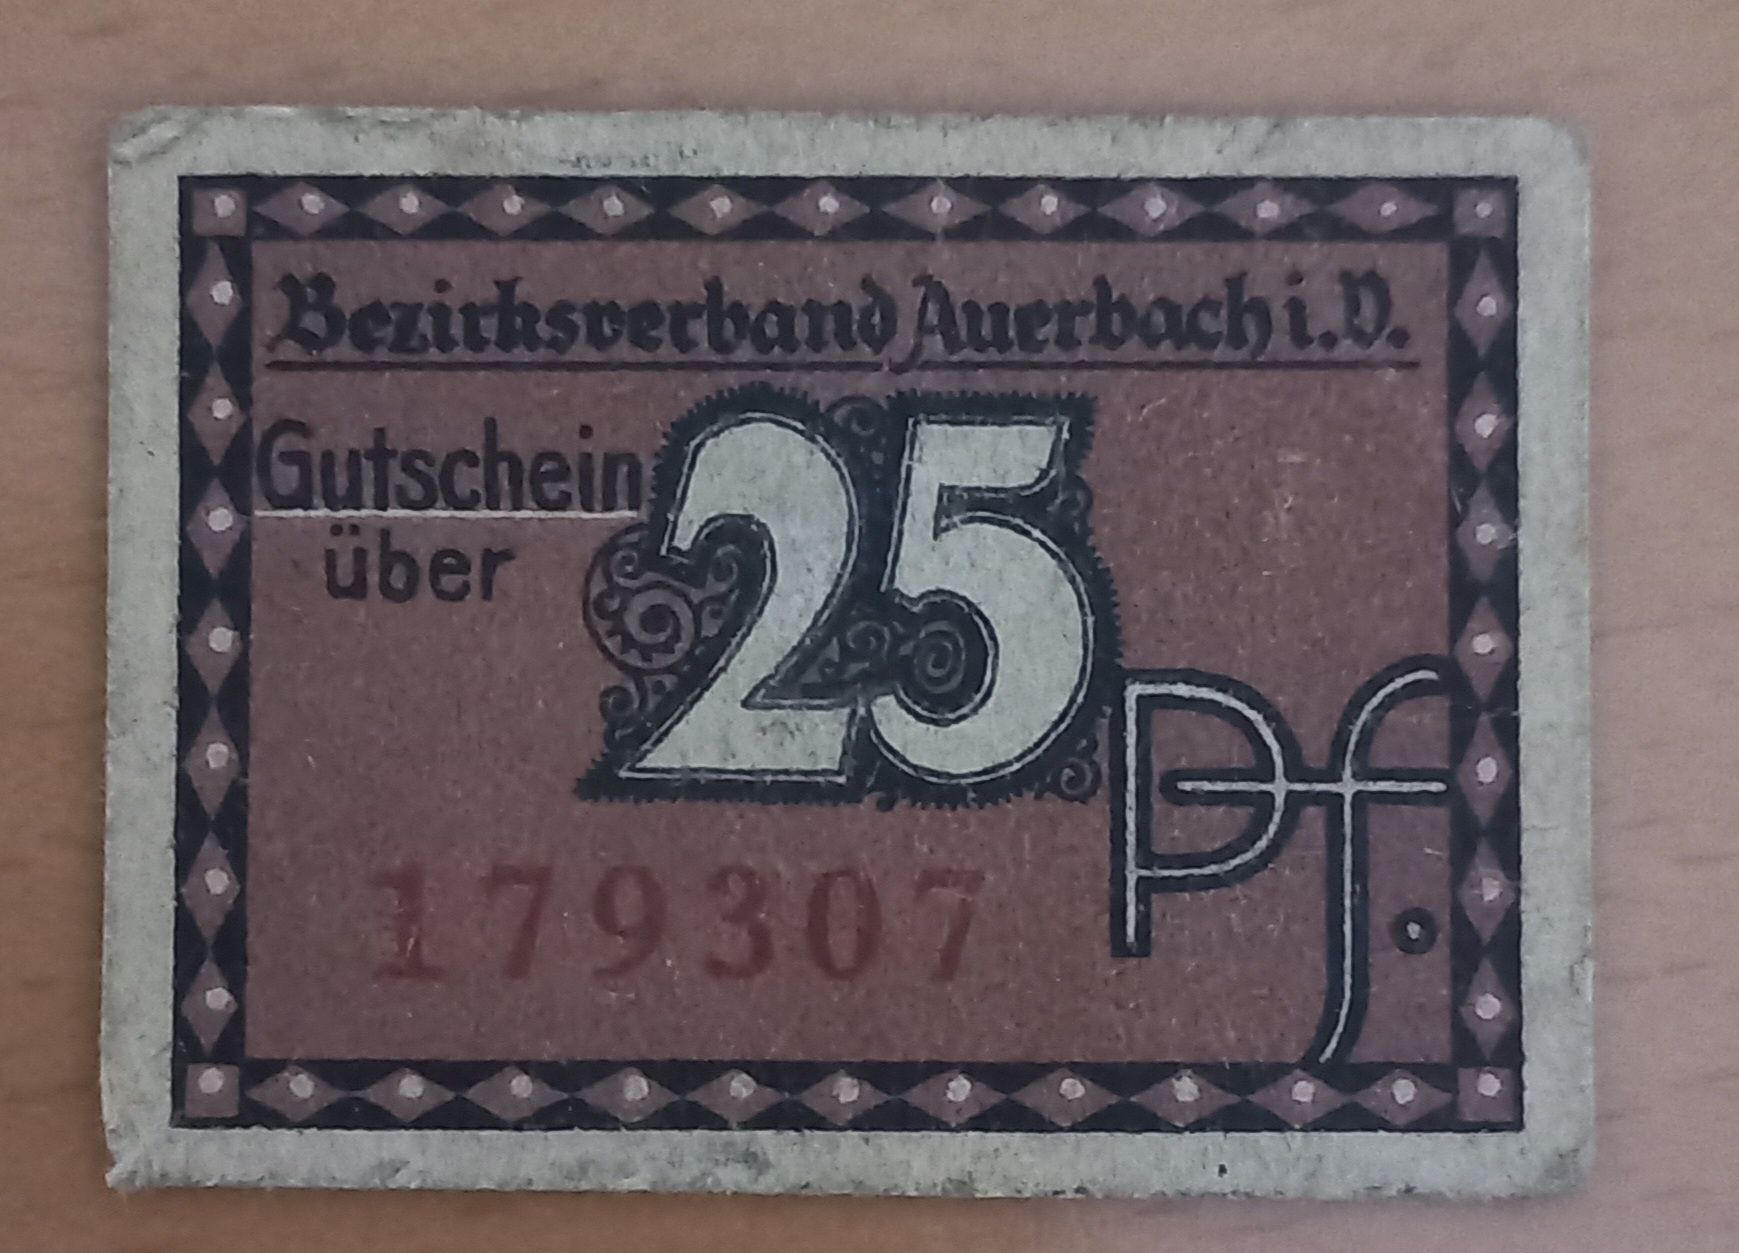 25 pfennig 1920 r. Niemcy Bezirk Auerbach notgeld